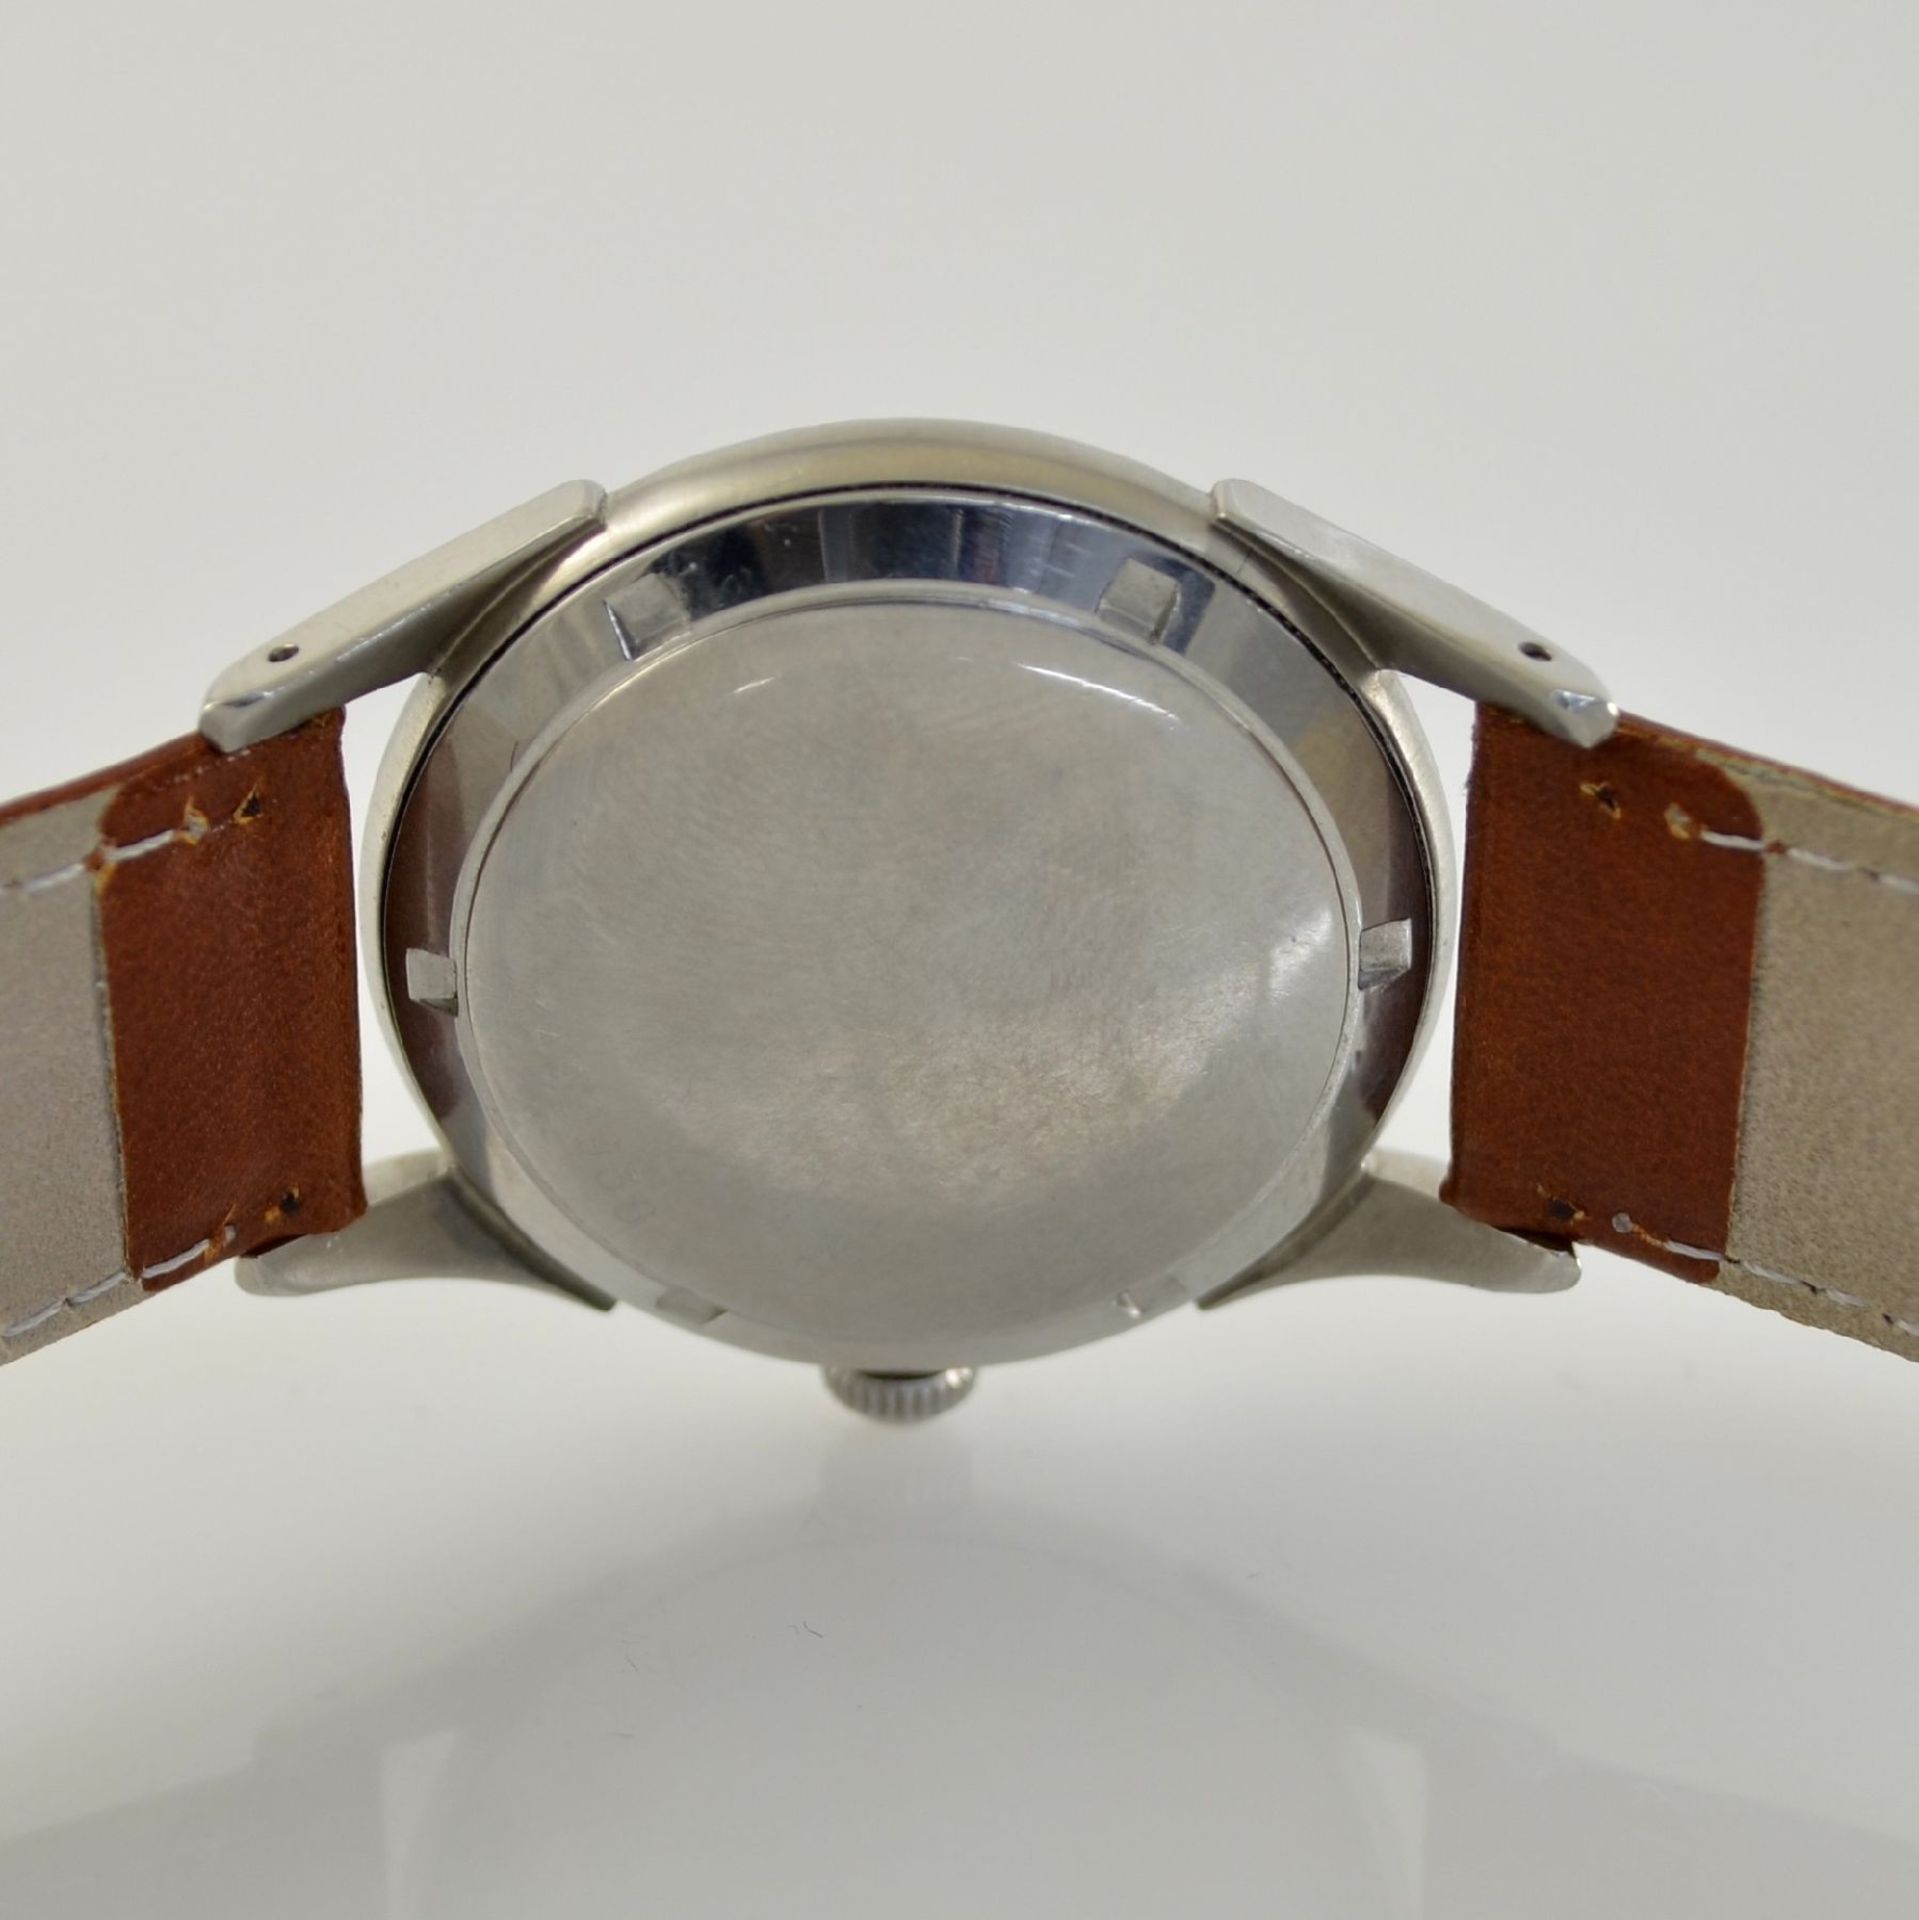 ETERNA-MATIC 2 wristwatches in steel, Switzerland around 1950, screwed down cases with unusual lugs, - Bild 4 aus 13